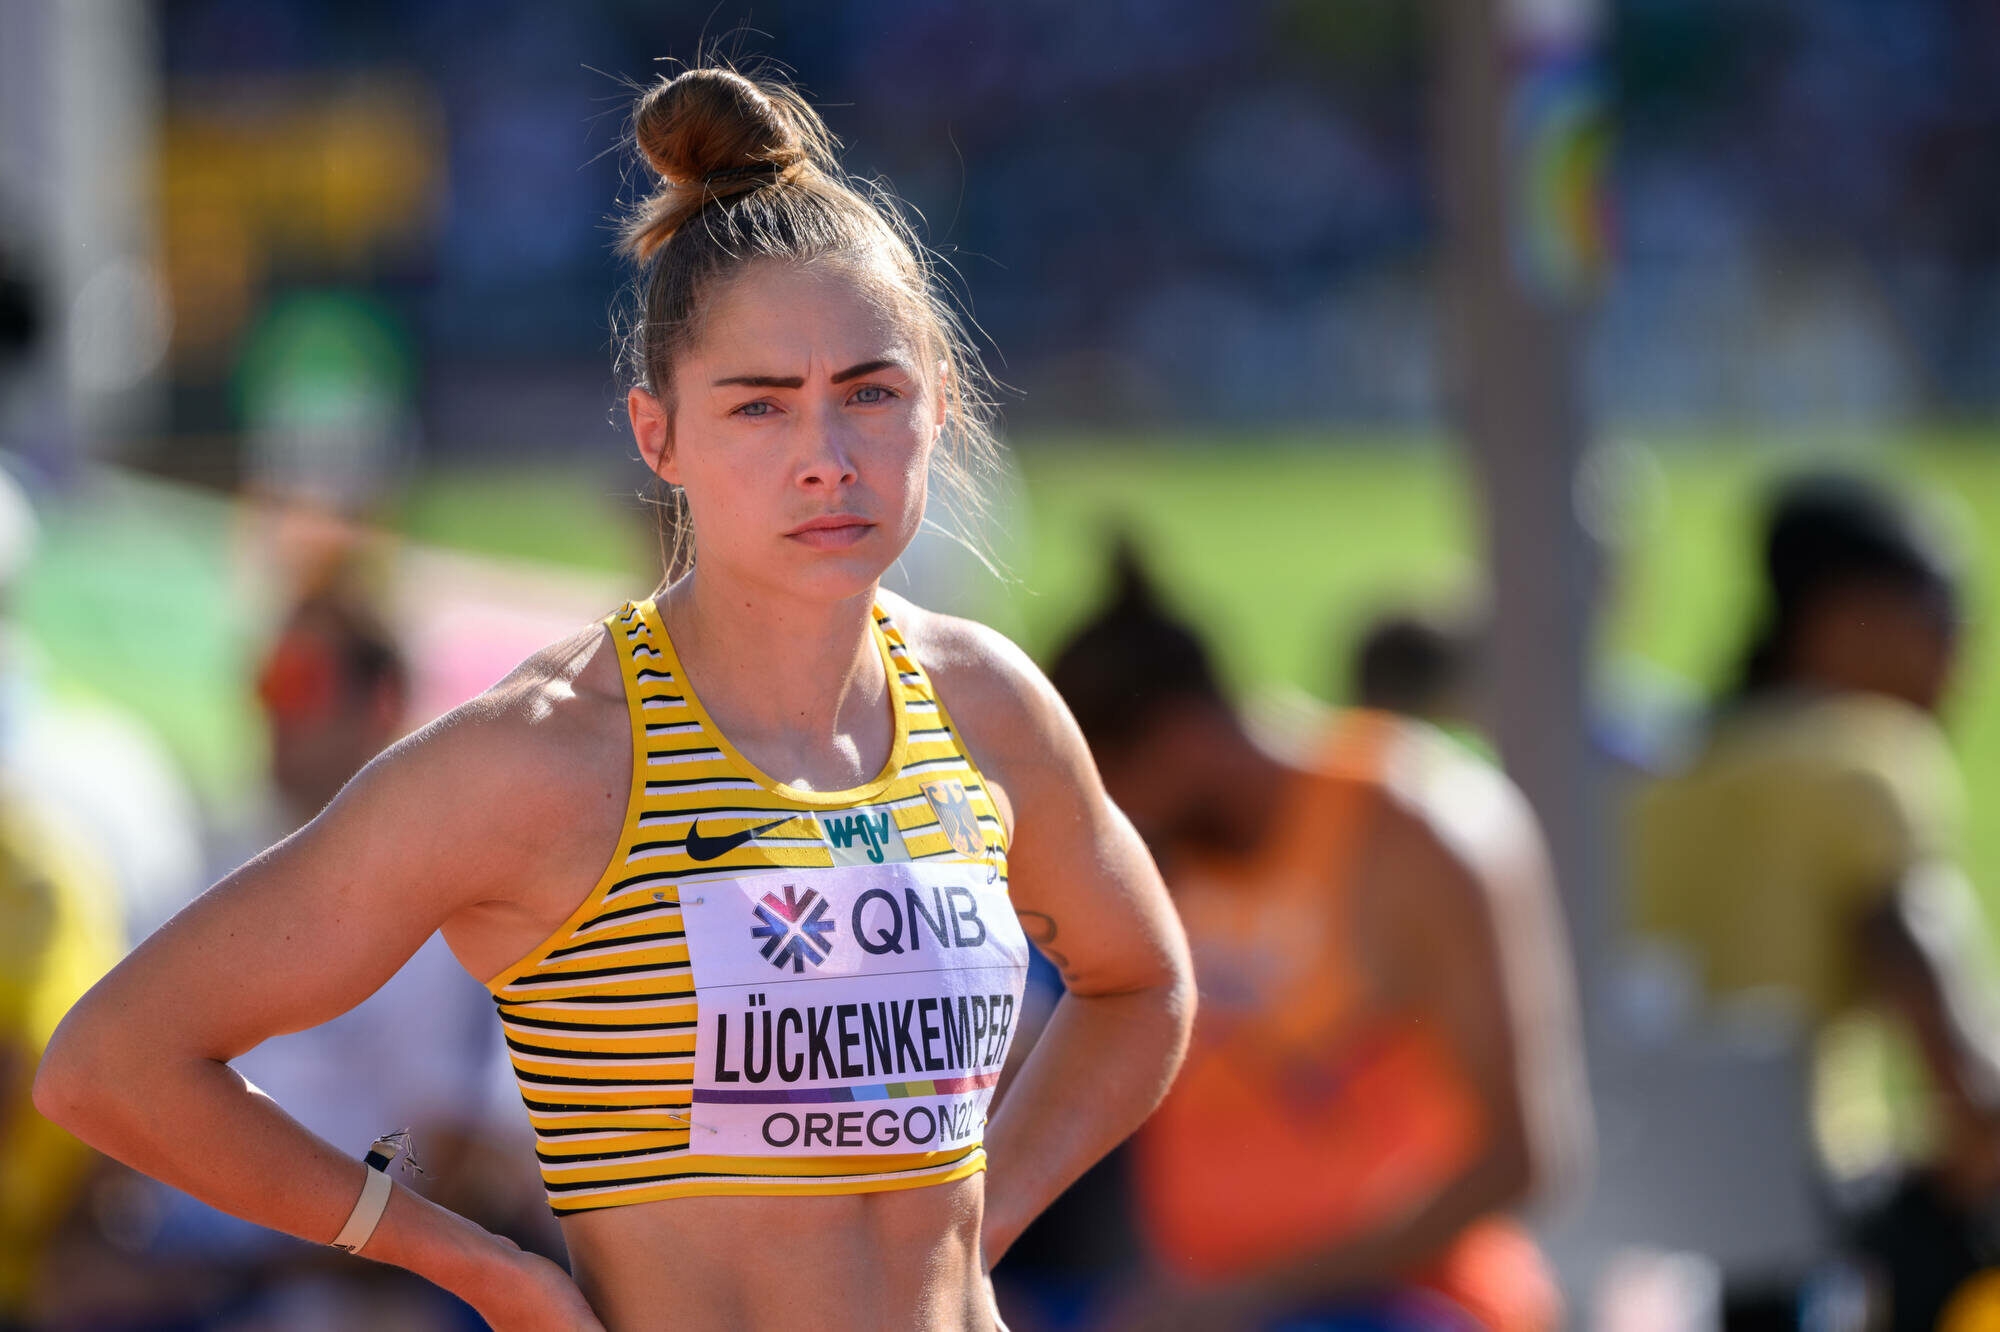 Die deutsche Leichtathletin Gina Lückenkemper äußert sich kritisch zum Verband.